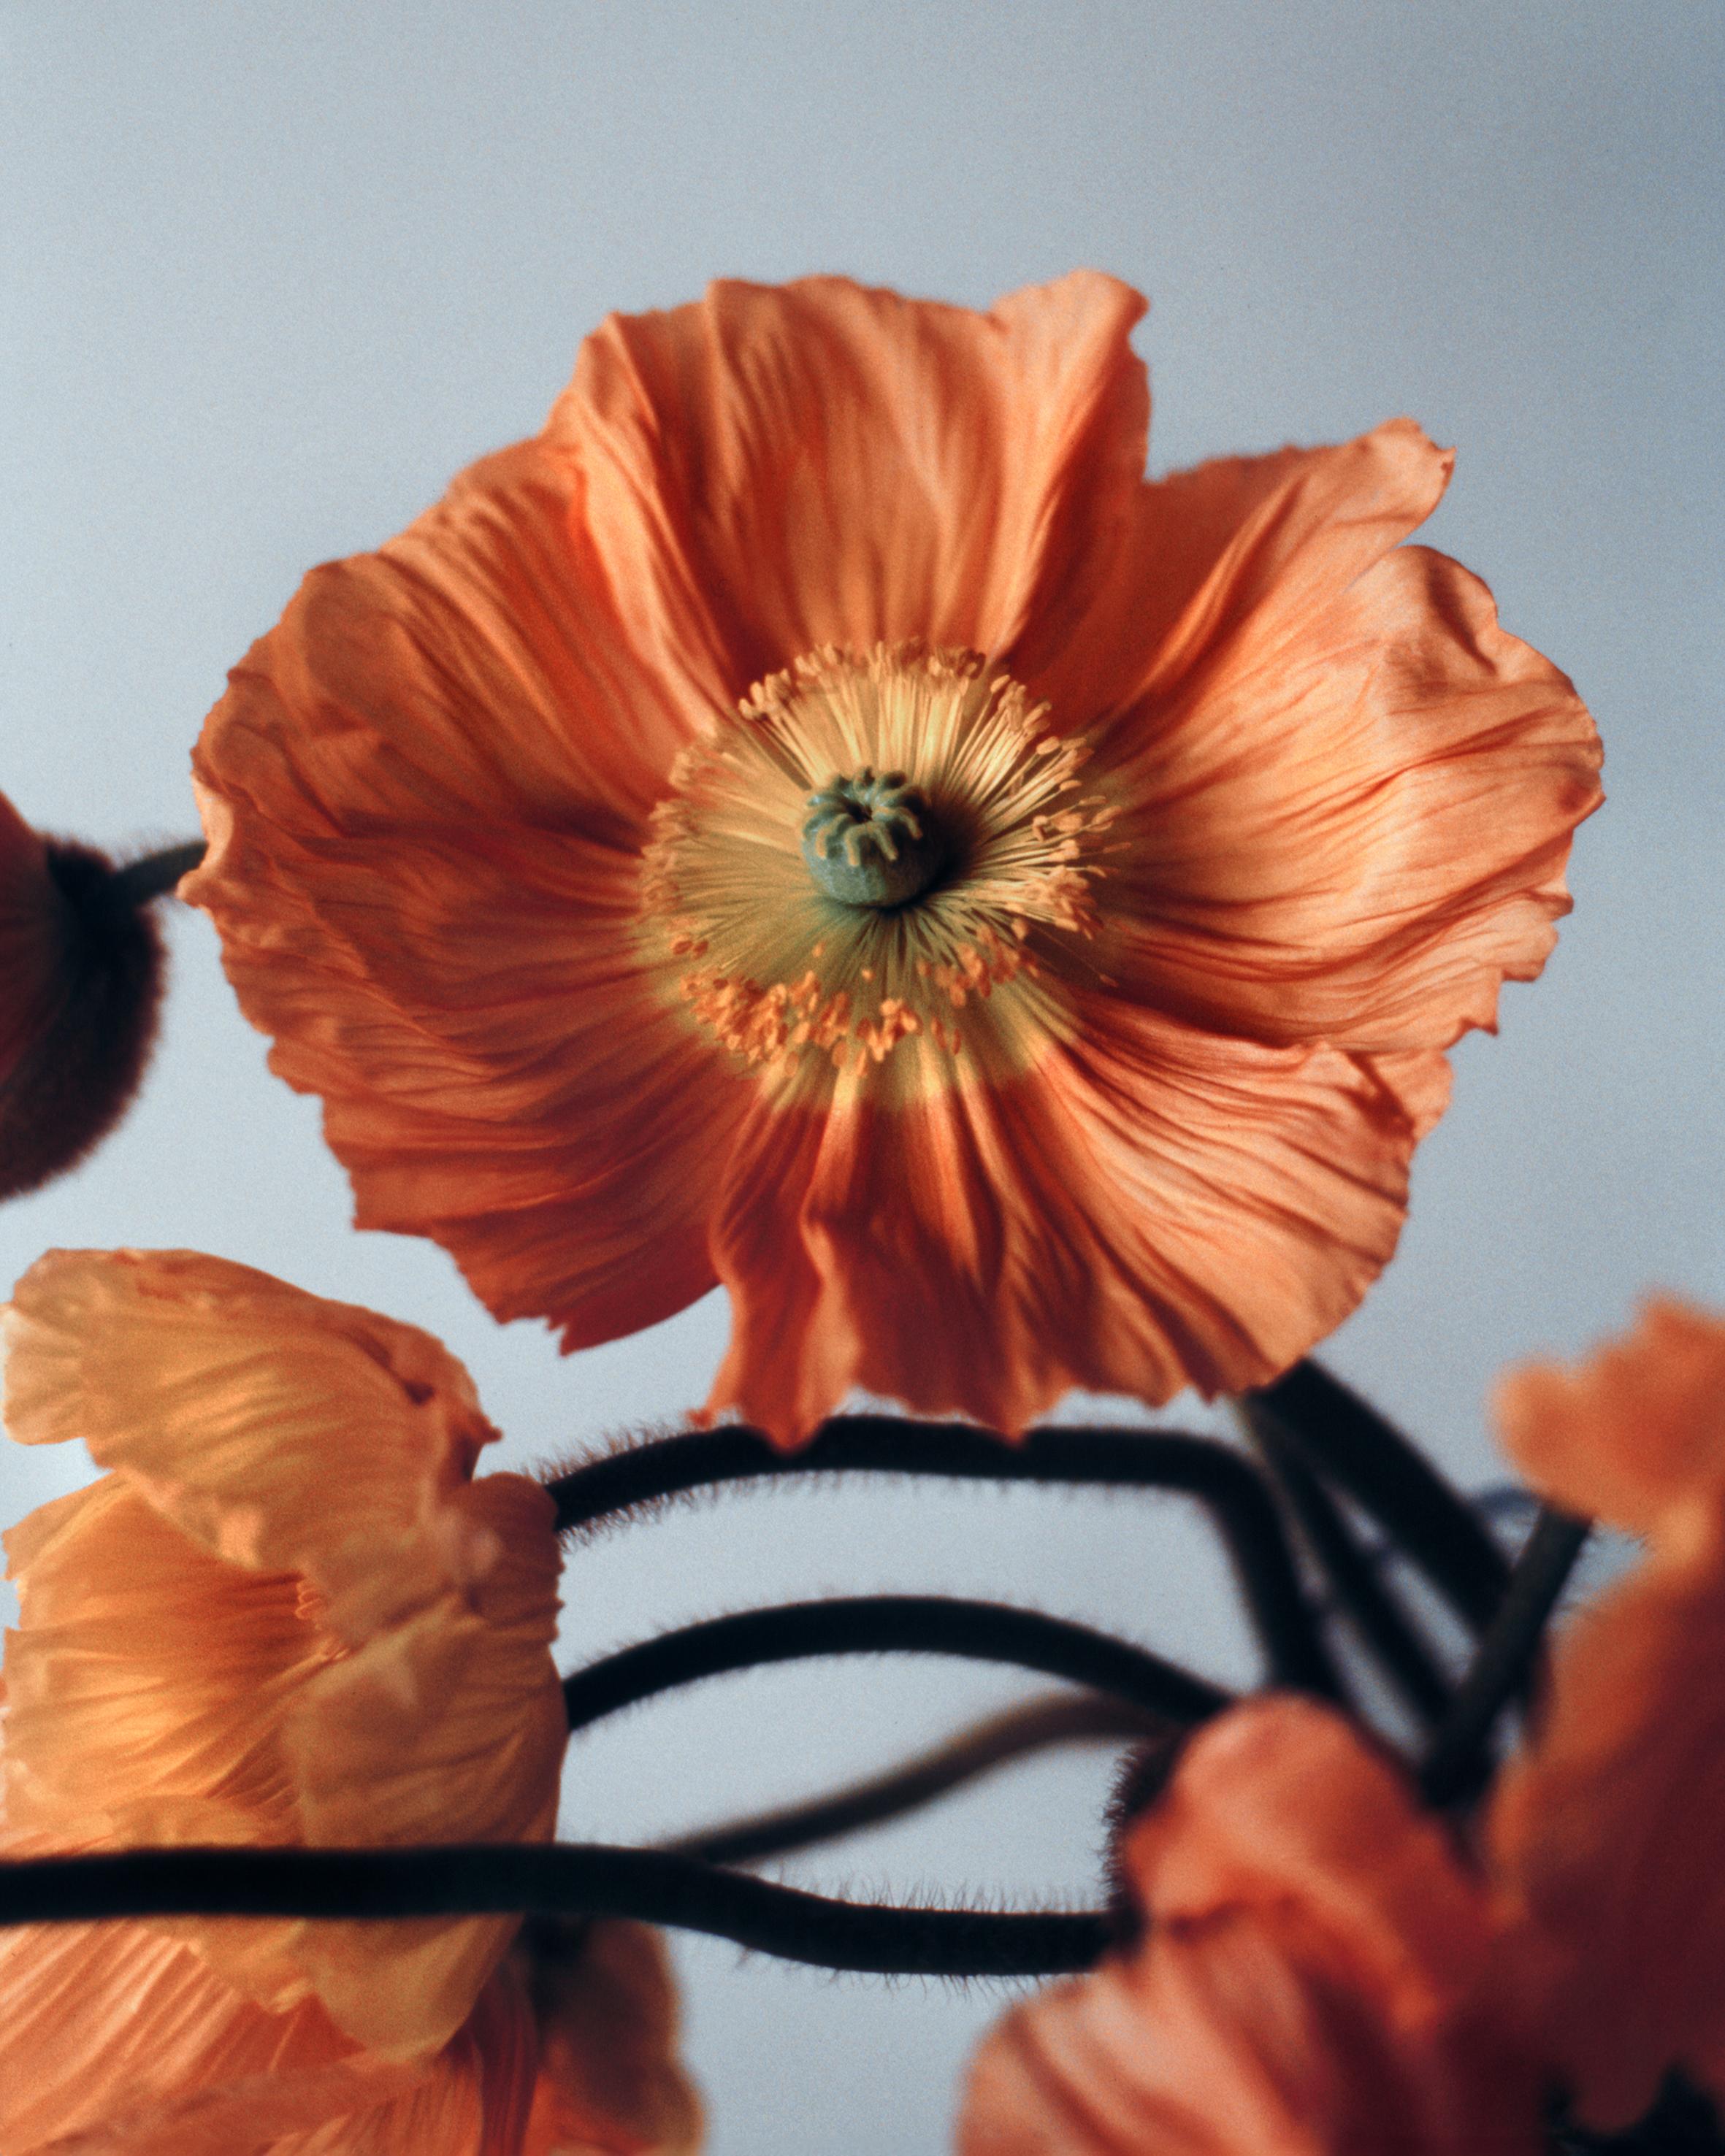 Color Photograph Ugne Pouwell - Poppies orange n°2 - Photographie florale analogue, édition limitée à 20 exemplaires